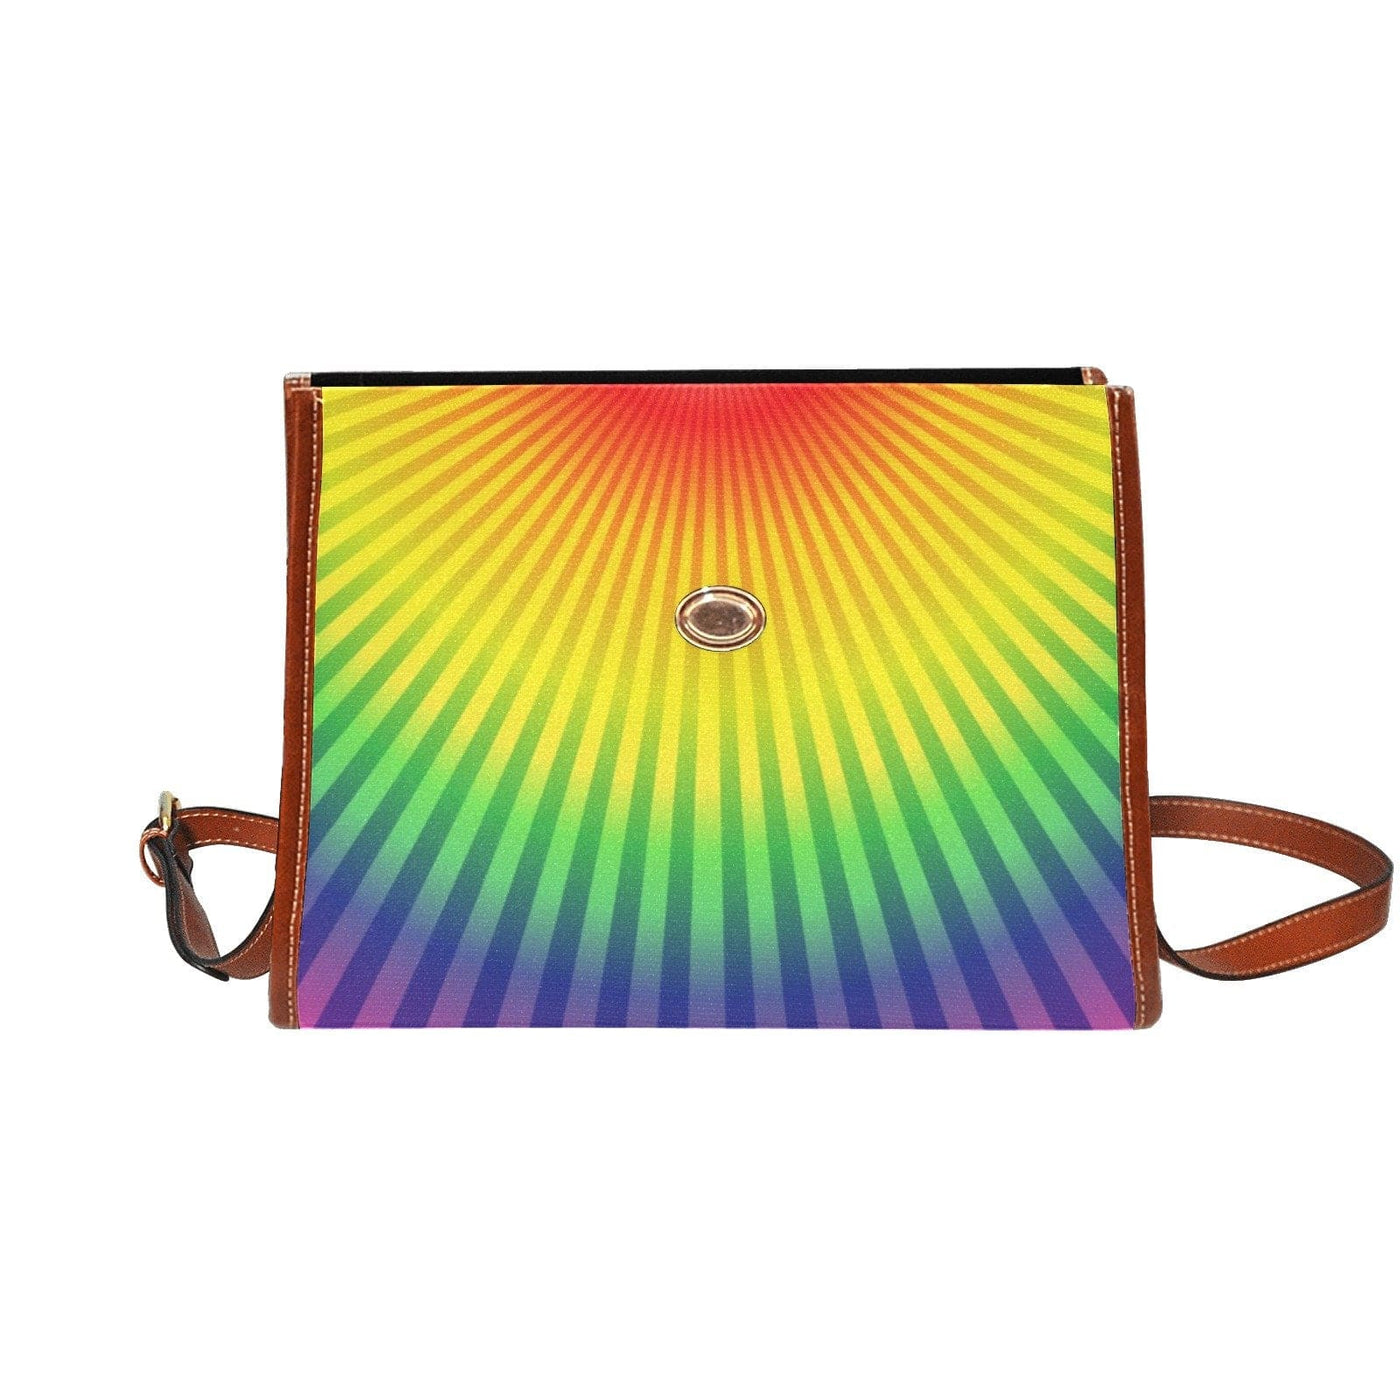 Top Handle Handbag Canvas Rainbow Radial Design - Multicolor - Bags | Handbags